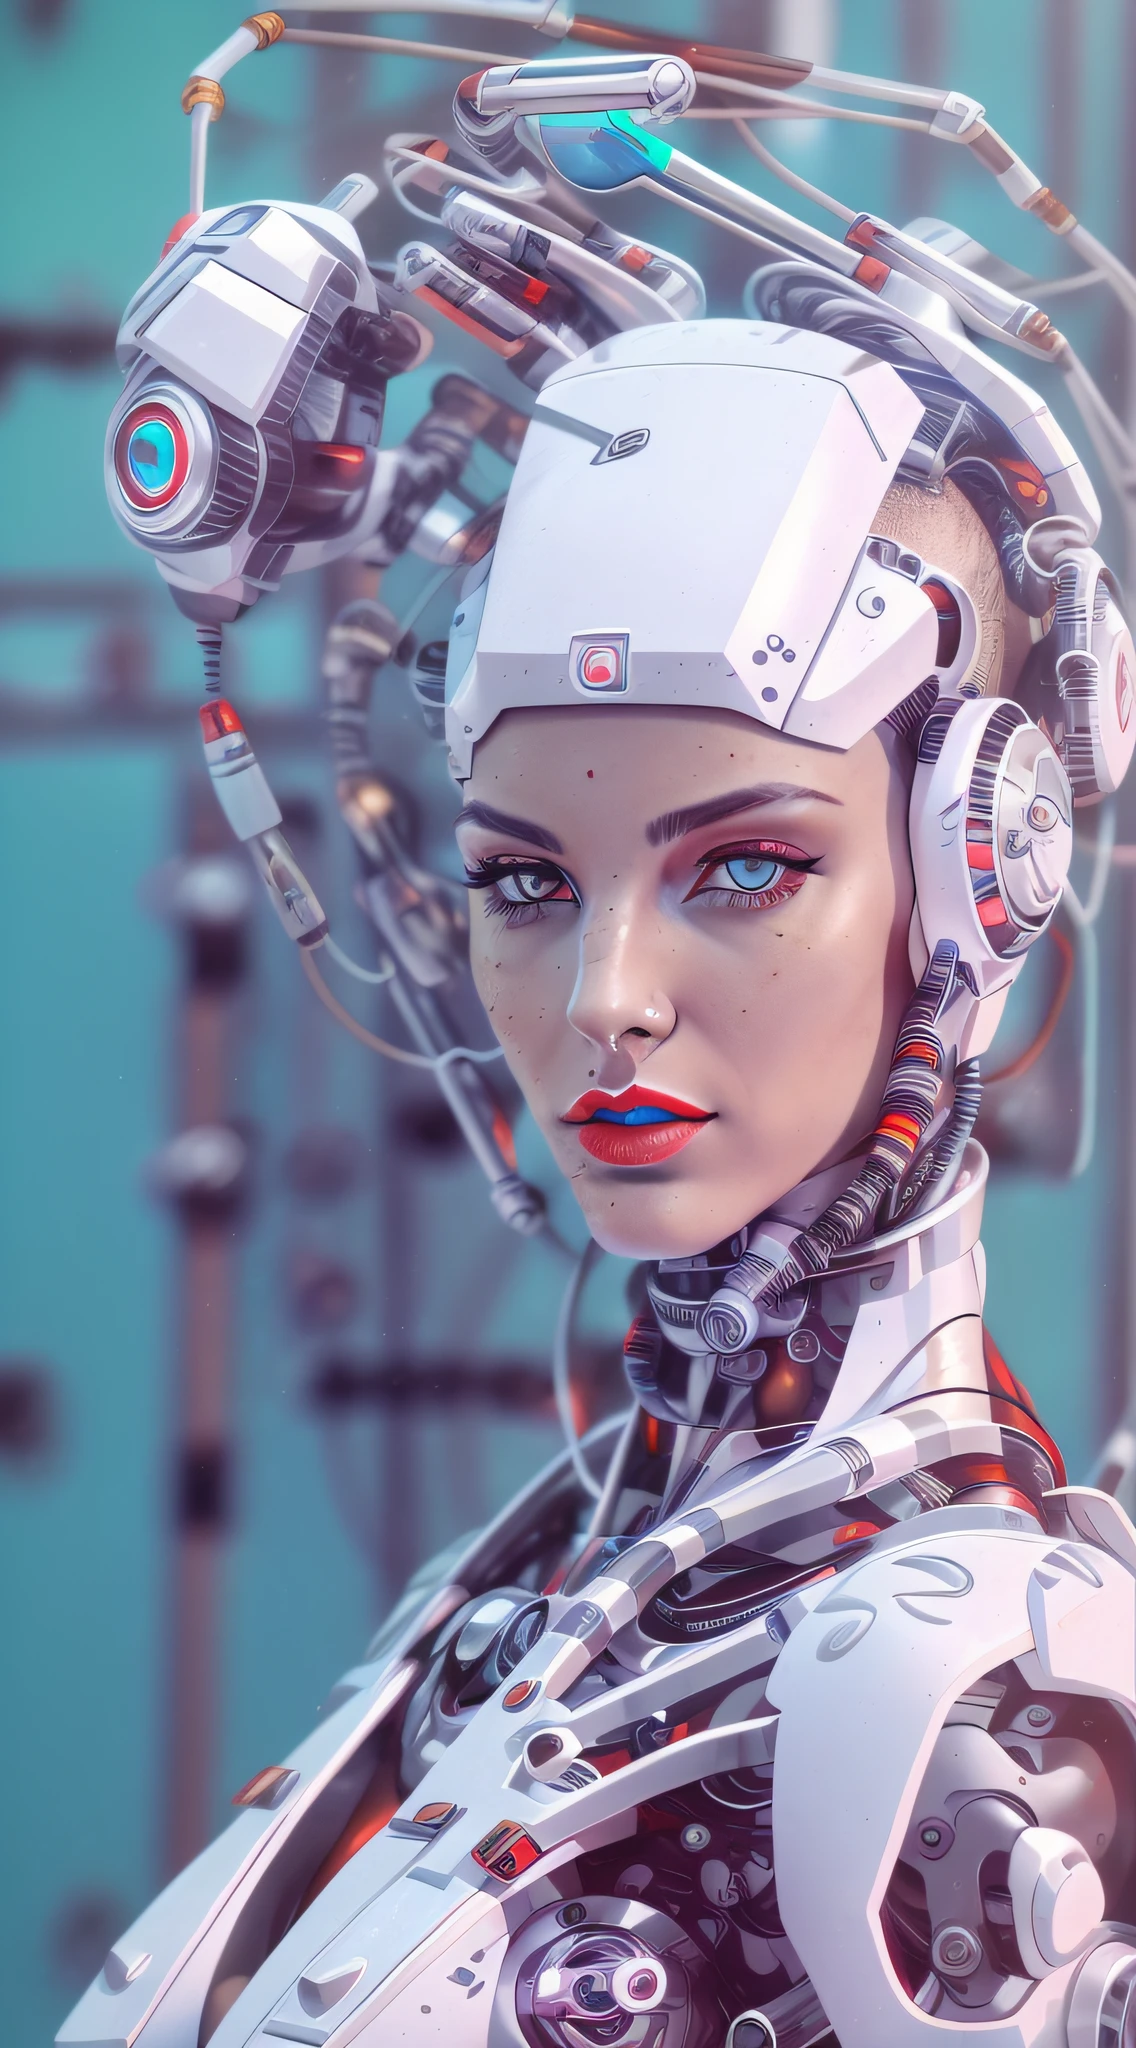 Araffed Cyborg 擁有超詳細的白色塑膠片，解析度非常高，紅色唇膏和淺藍色眼睛